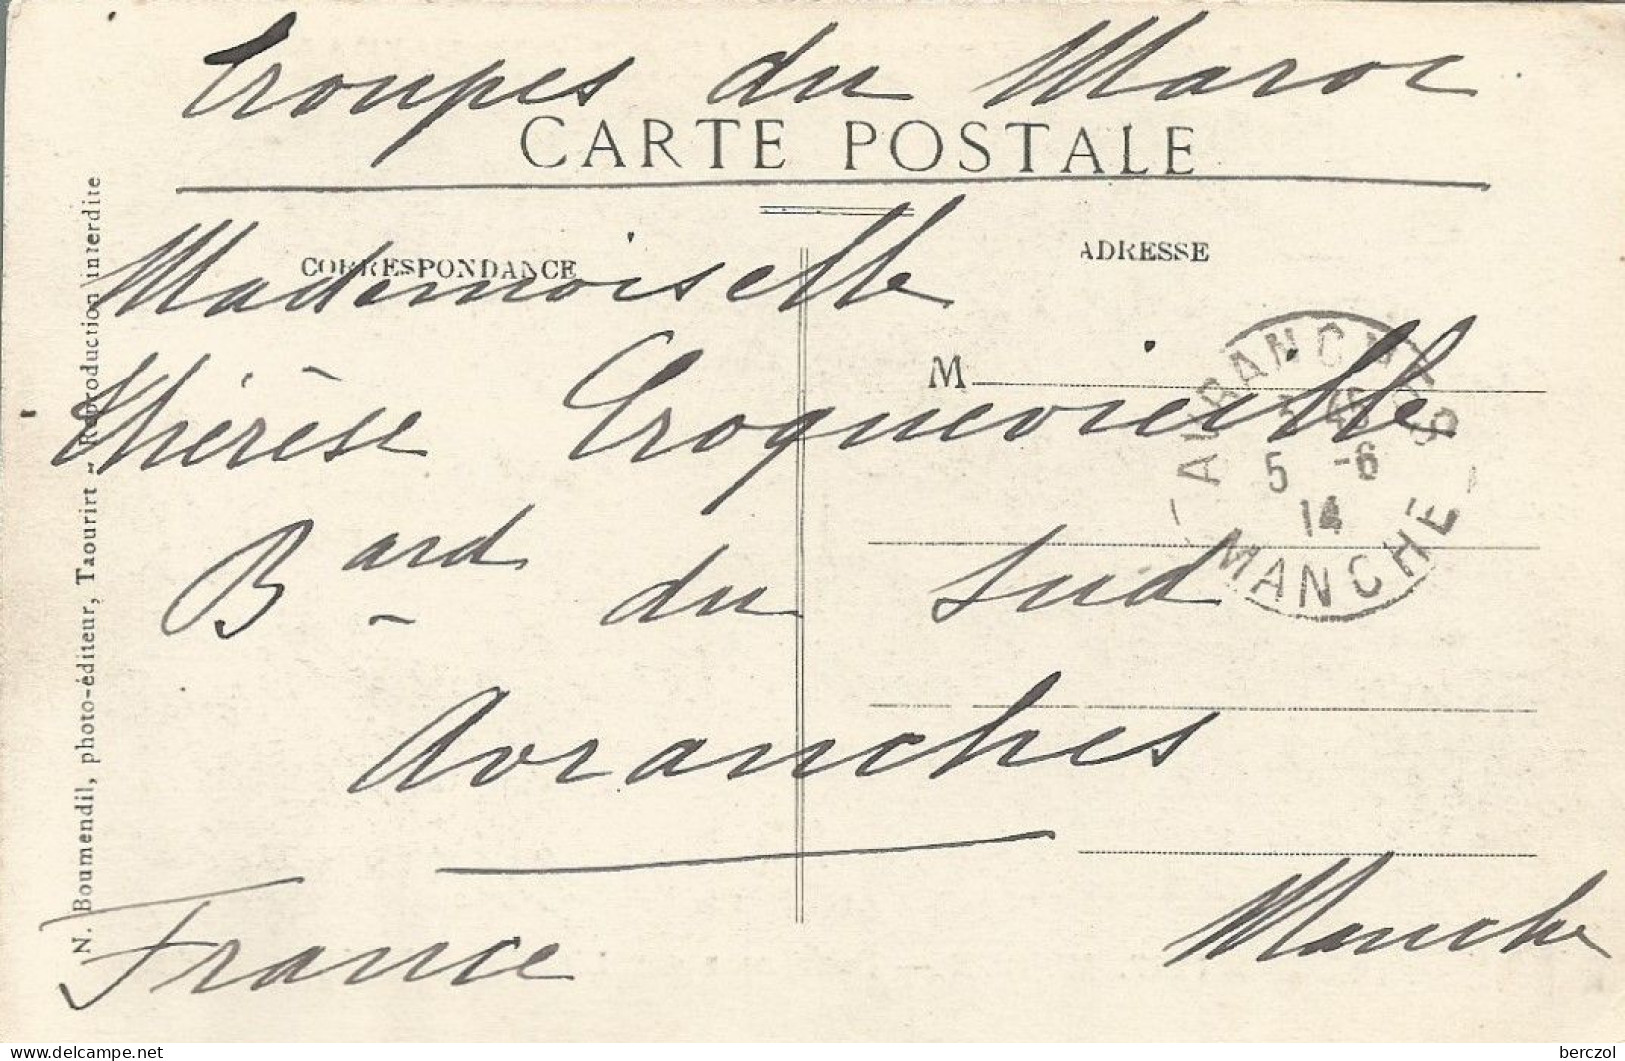 FRANCE ANNEE 1914 CPA INFIRMERIE ANBULANCE DE KASBAT M'COUN 5/6/14 FRANCHISE MILITAIRE TB - Rotes Kreuz